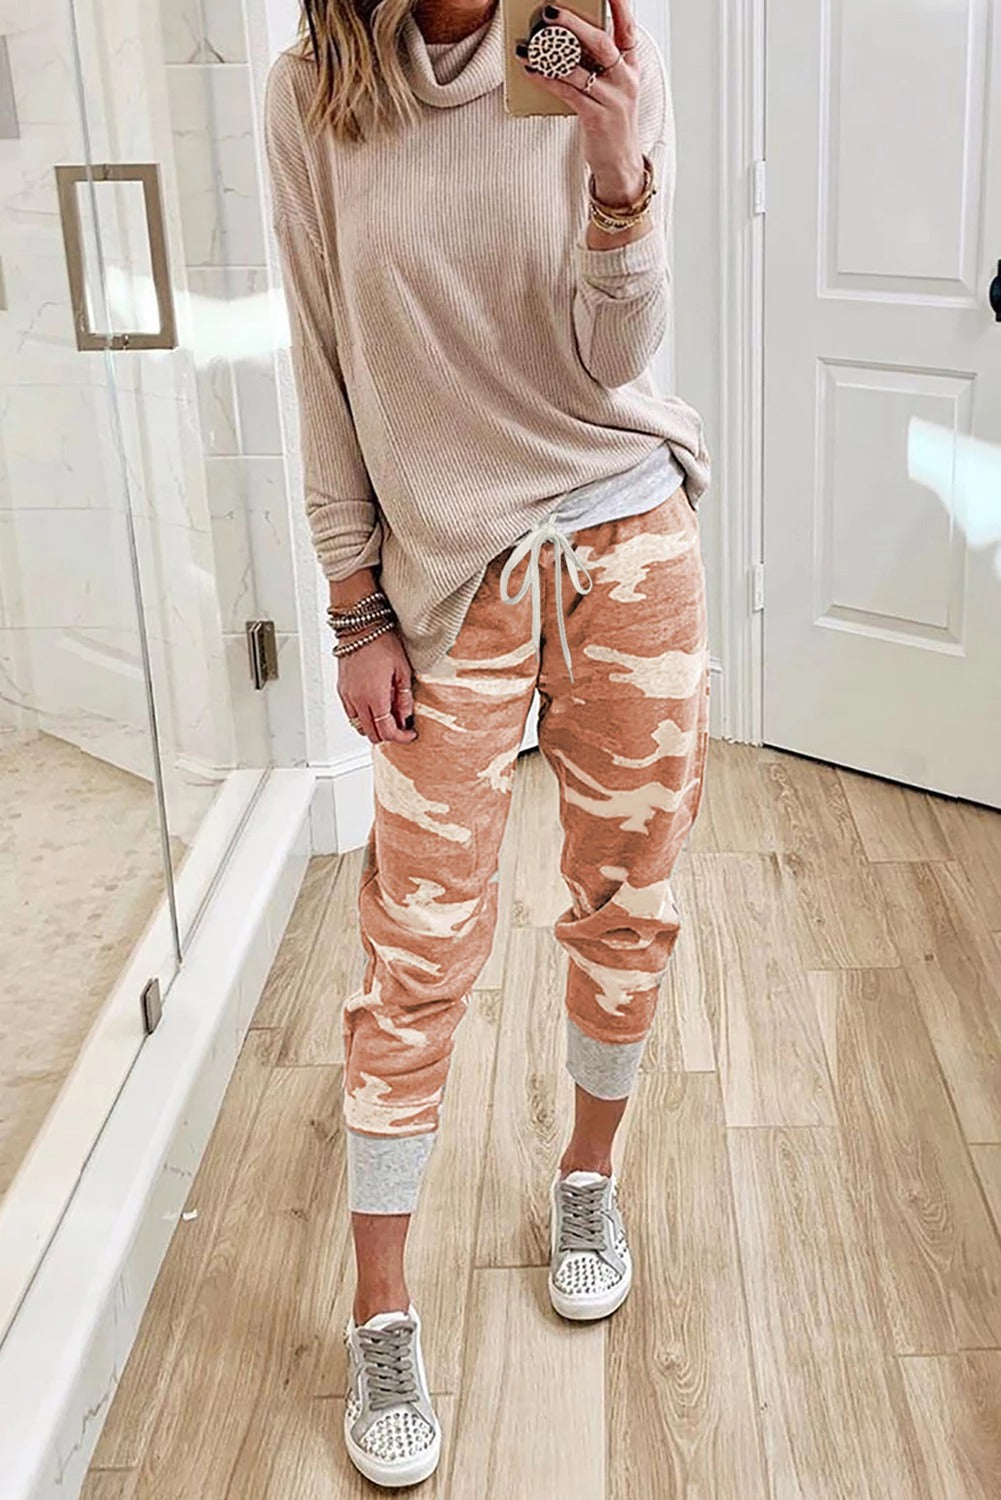 Pantalon de Sport Femme Tricot Imprime Camouflage Orange